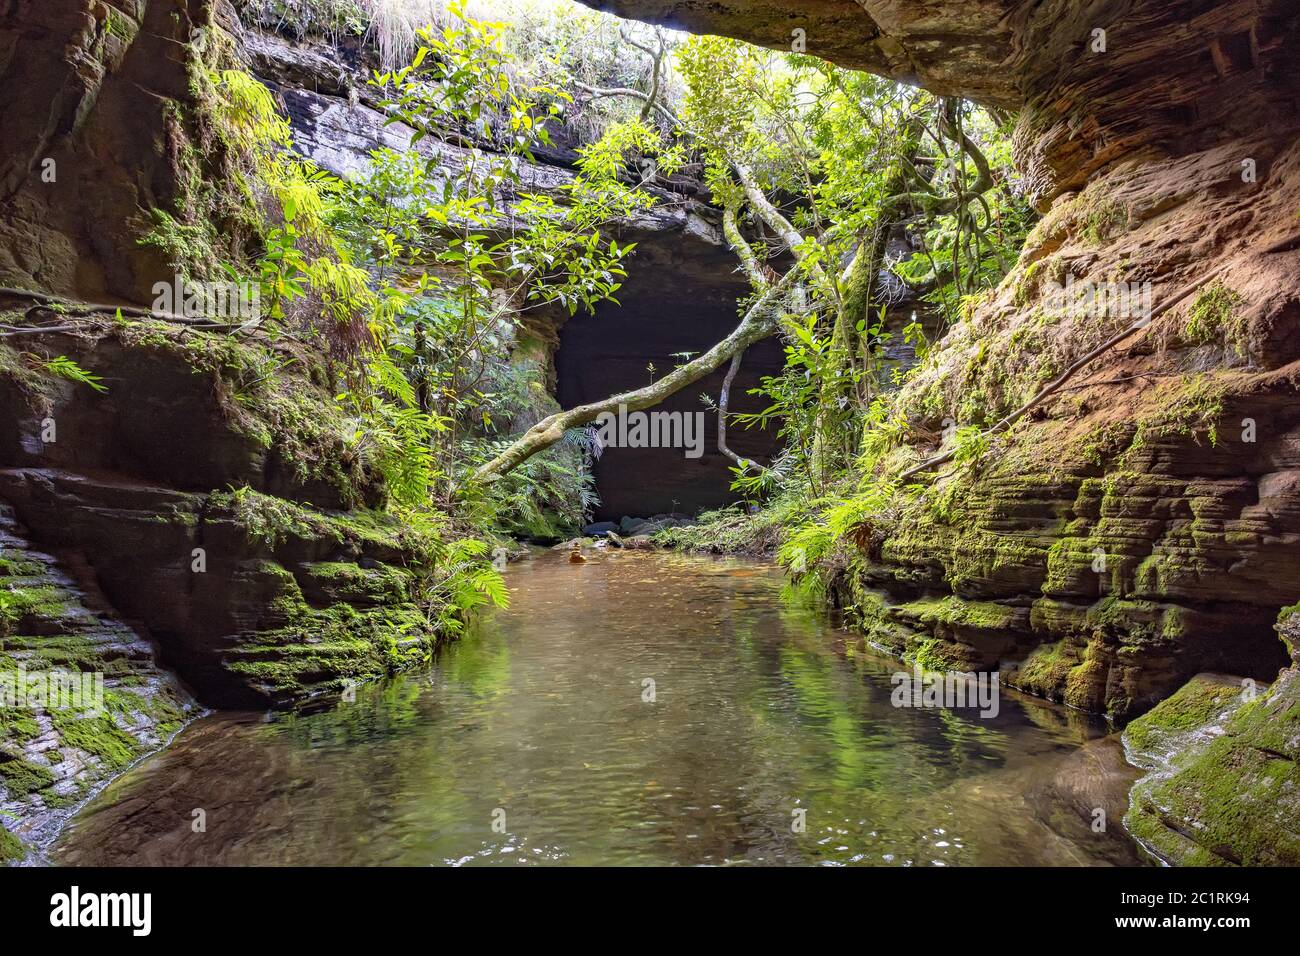 Rivière traversant des rochers, des mousses, des cavernes et de la végétation dans la forêt tropicale Banque D'Images